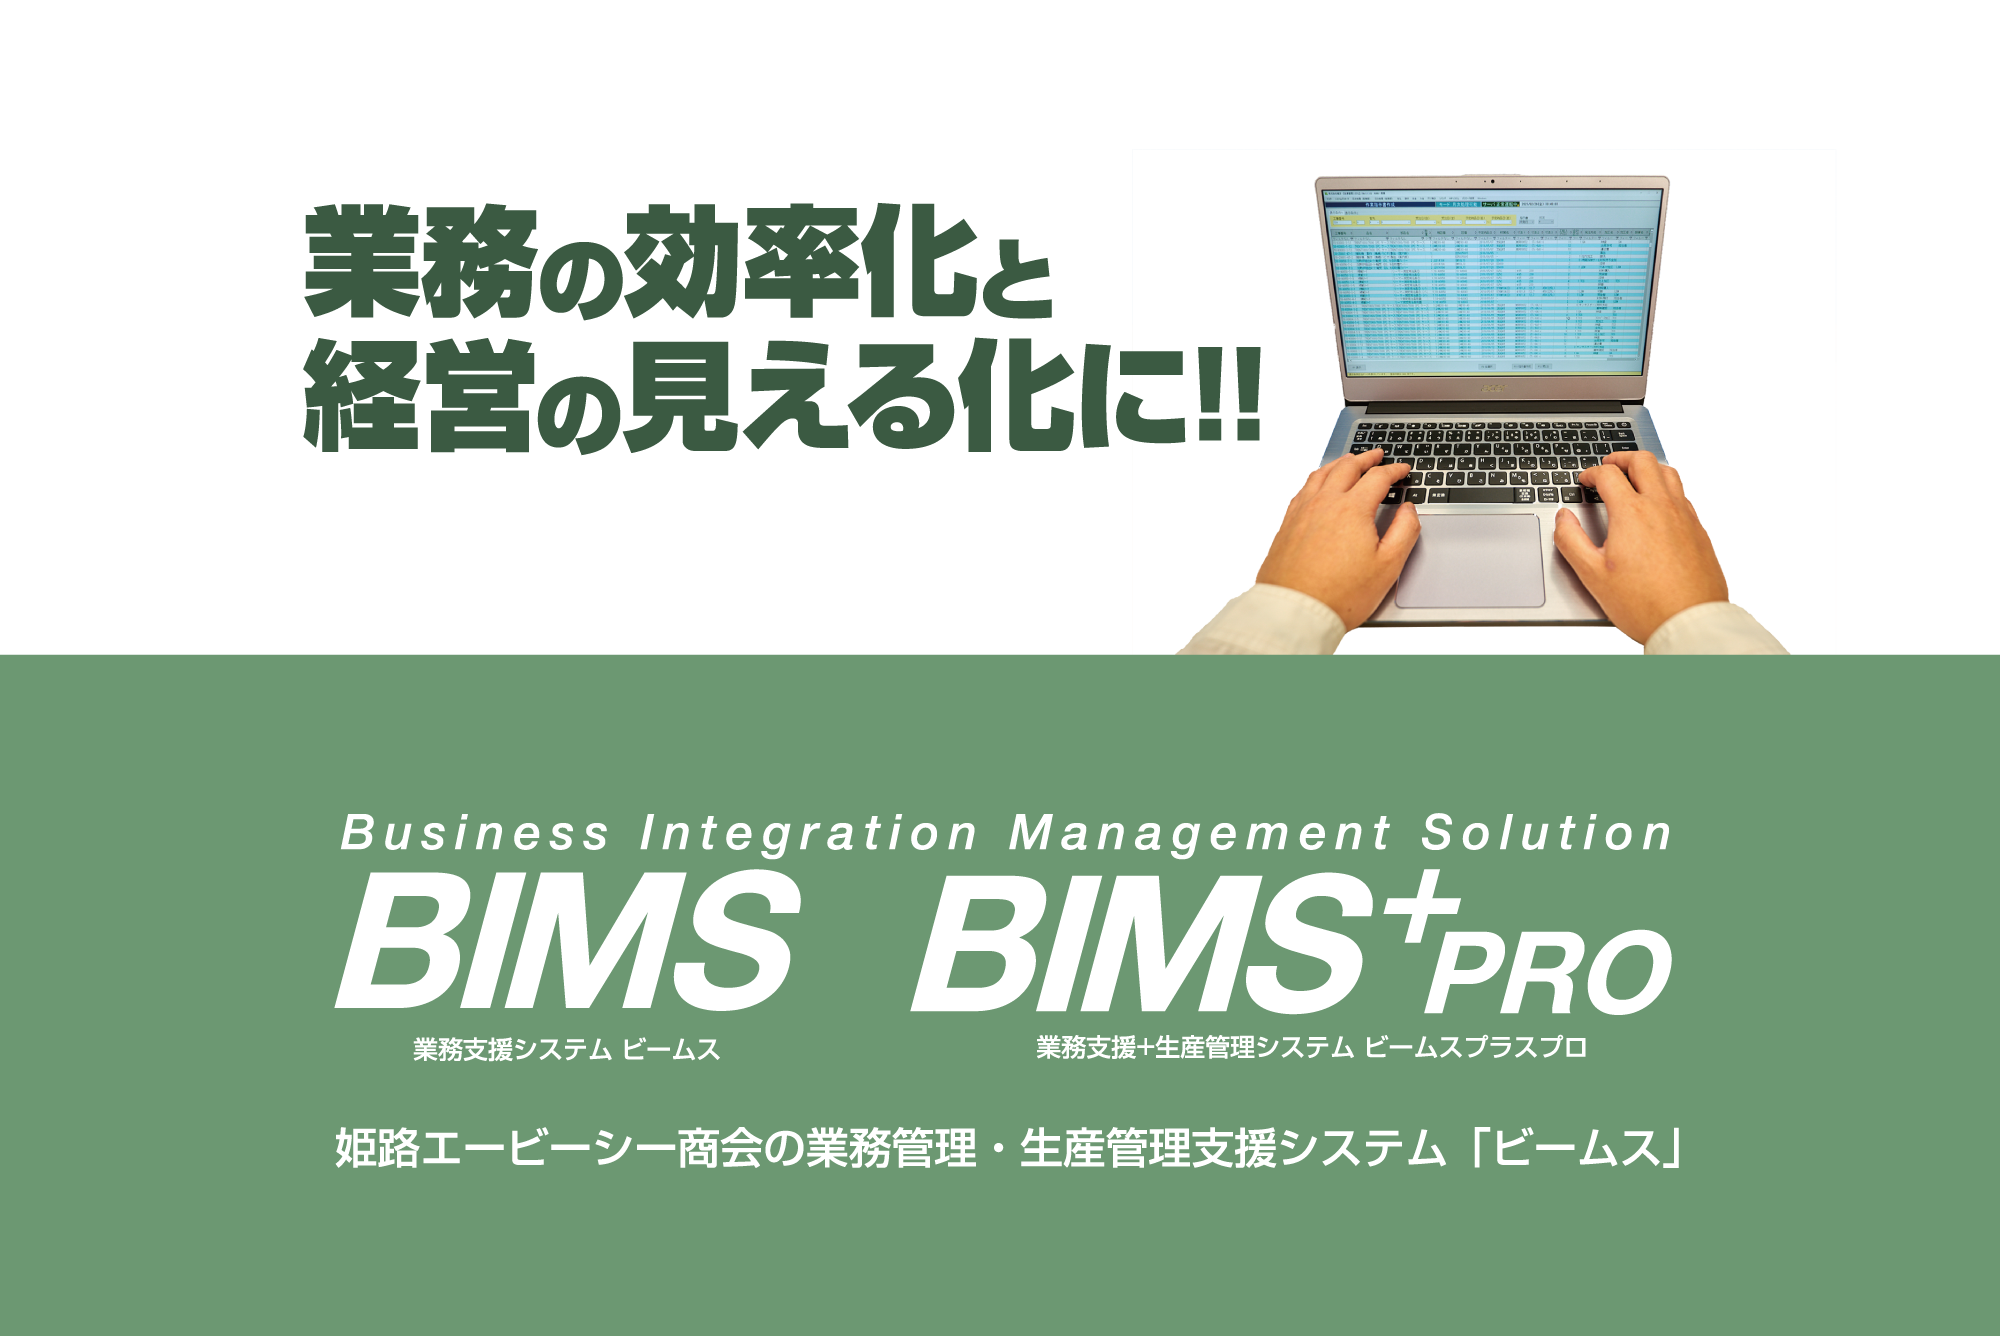 業務管理・生産管理システム BIMS & BIMS+pro